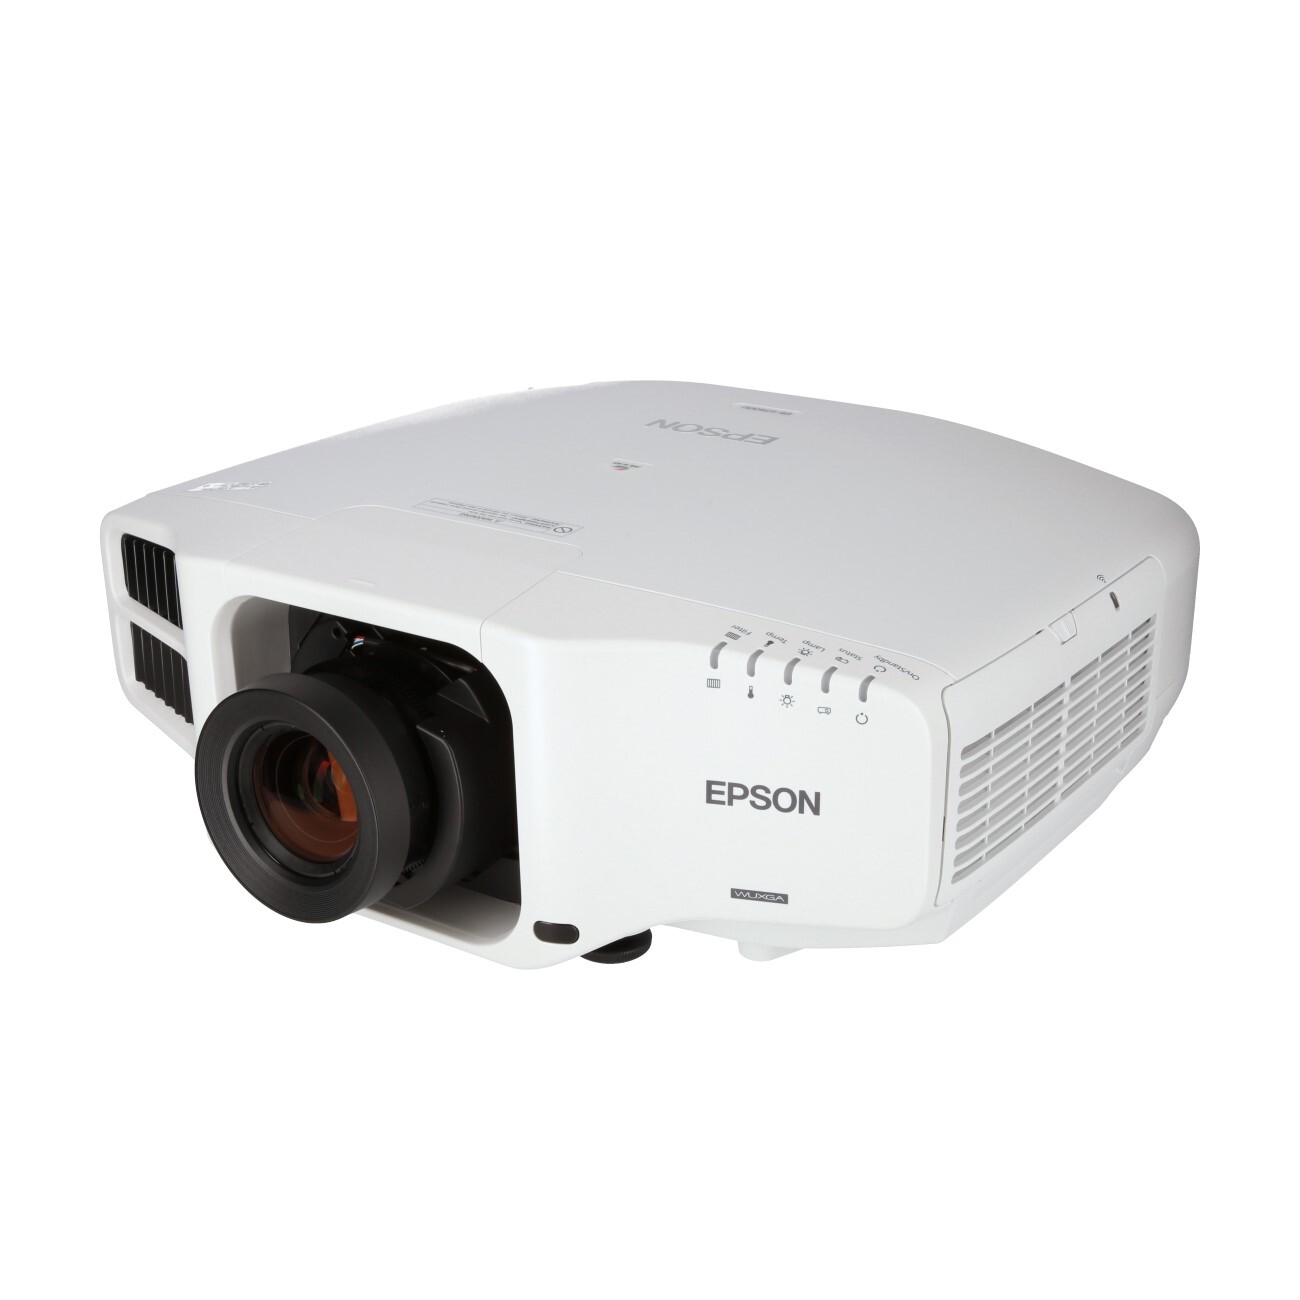 * NEU original Epson eb-g7400u Projektor Fernbedienung